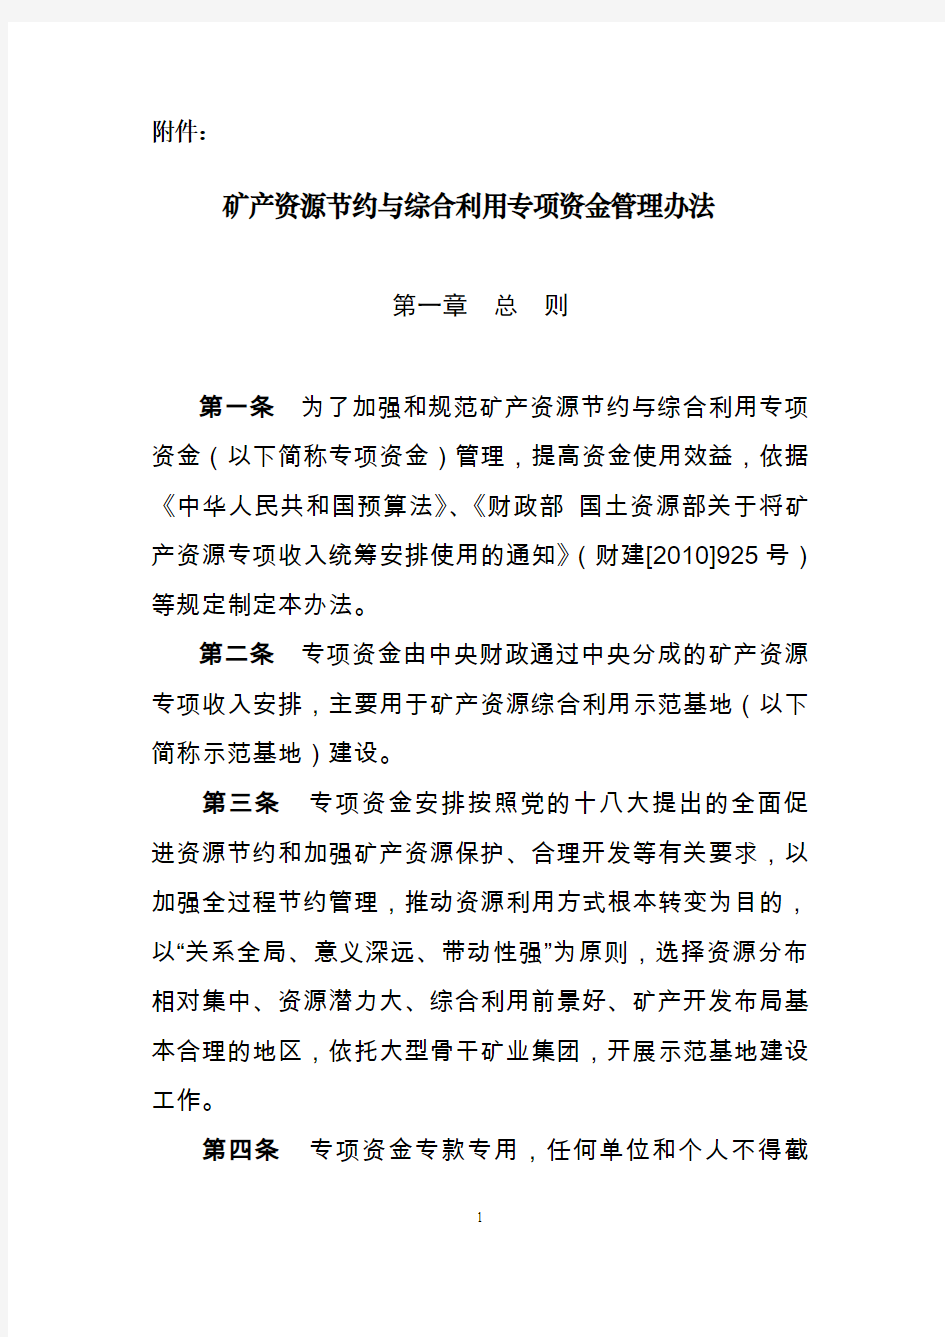 矿产资源节约与综合利用专项资金管理办法-中华人民共和国财政部